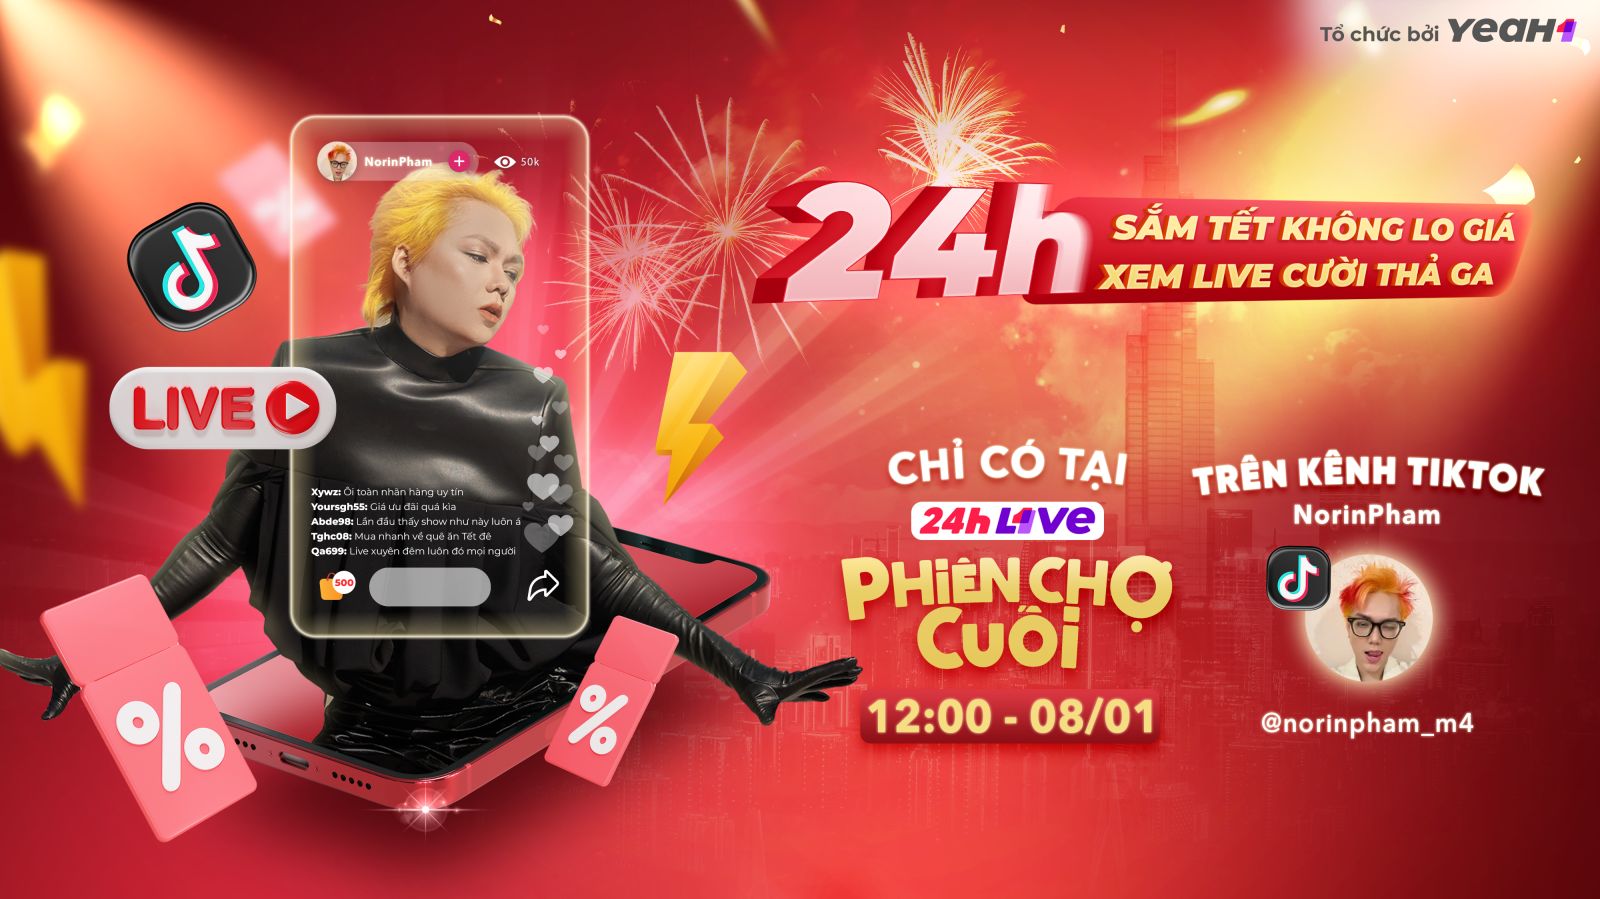 Hot TikToker Phạm Thoại livestream 24h liên tục trong chương trình lần đầu tiên xuất hiện tại Việt Nam - ảnh 1